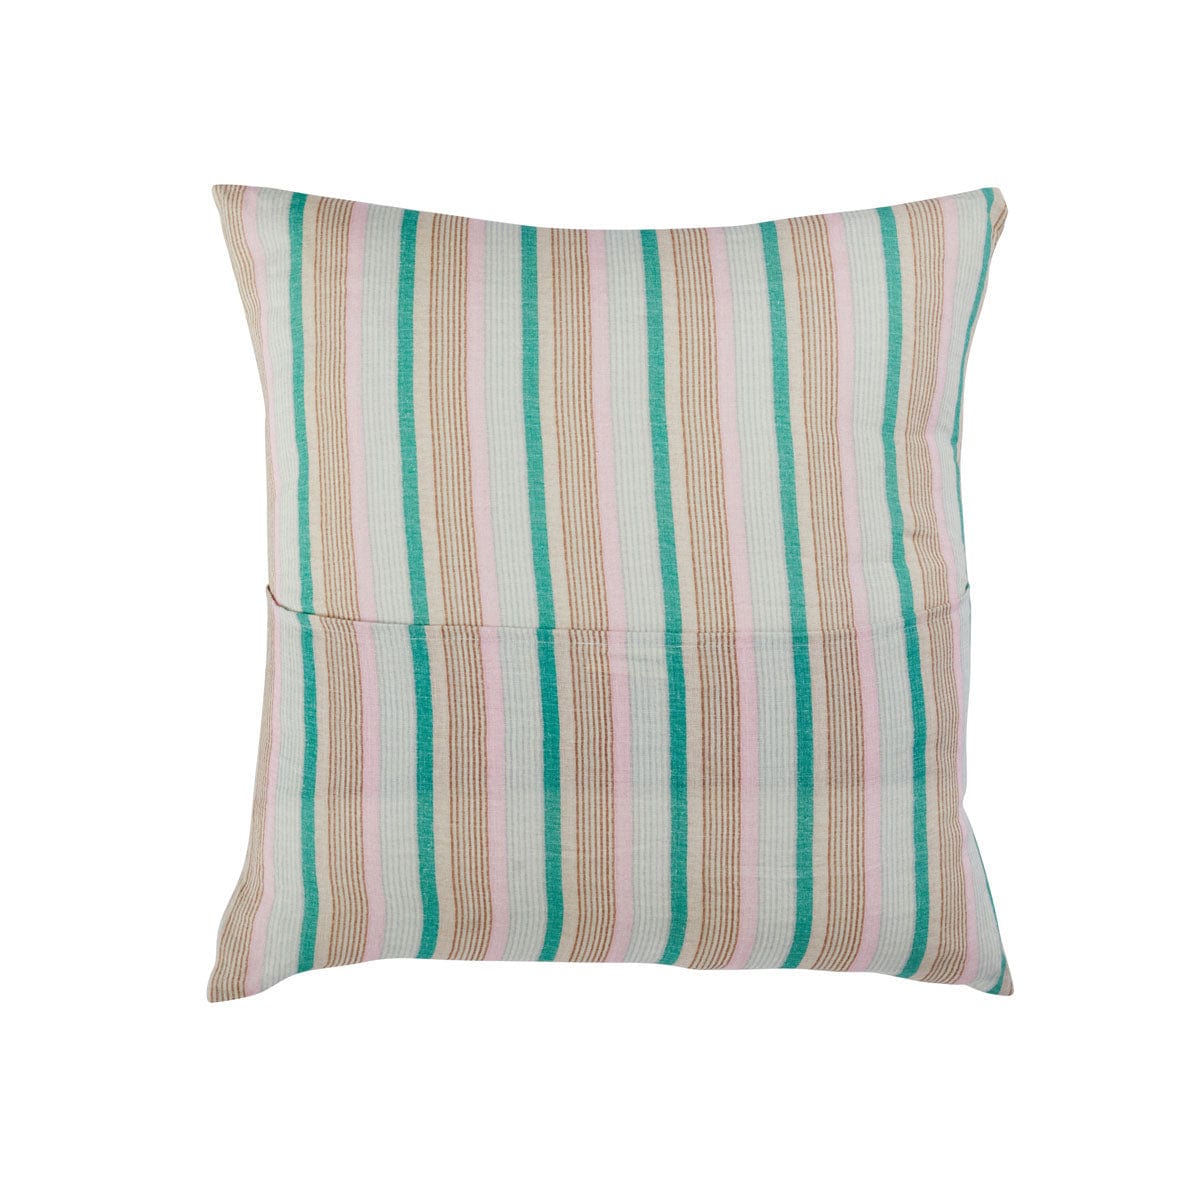 Amalfi – Linen Euro Pillowcase Set